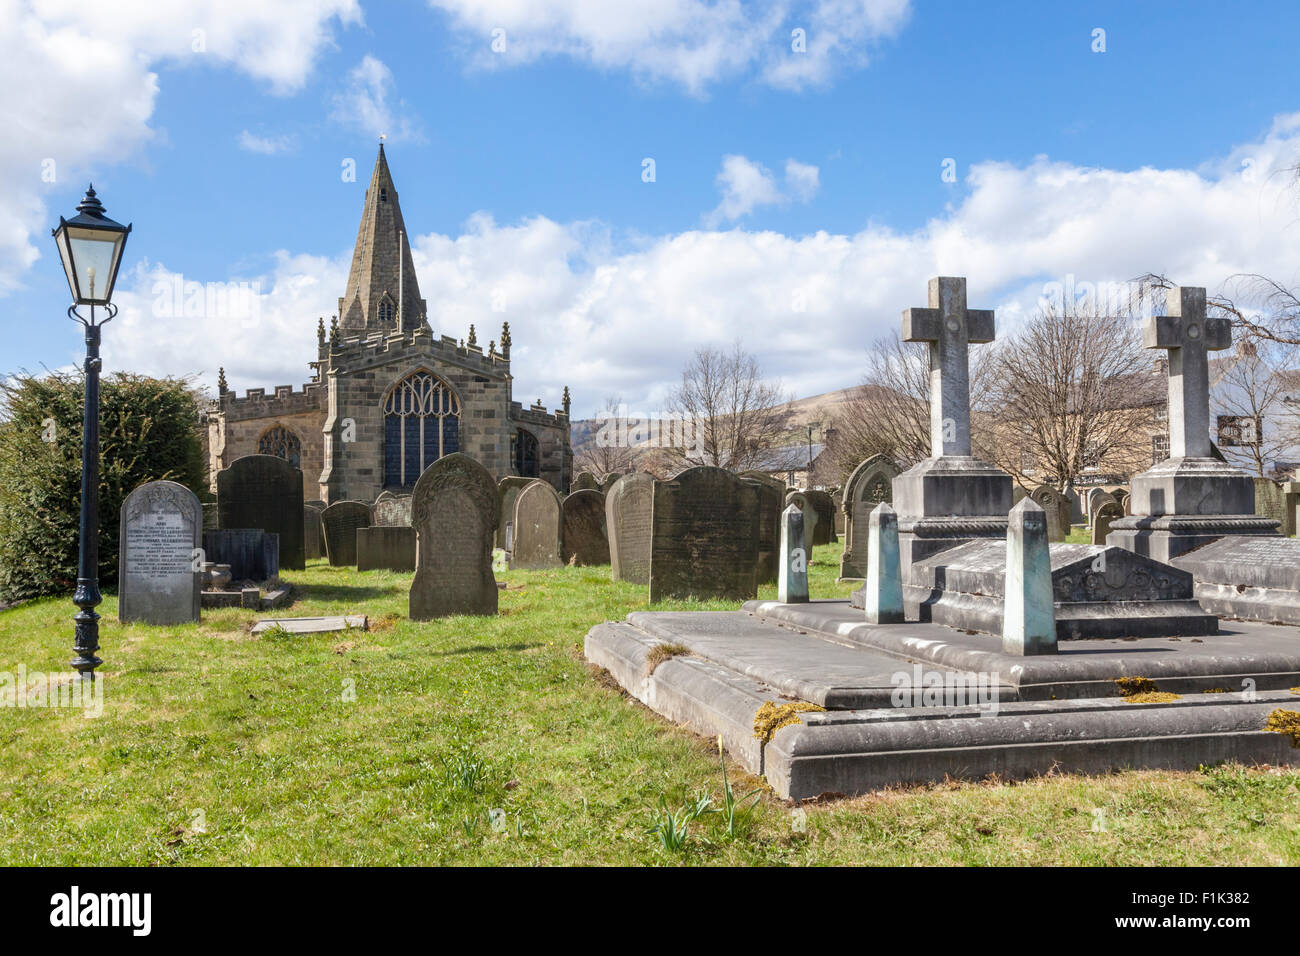 Grabsteine auf dem Friedhof oder Friedhof an der Kirche von St. Peter, ein 14 Grad 1 denkmalgeschützte Kirche an der Hoffnung, Derbyshire, England, Großbritannien Stockfoto